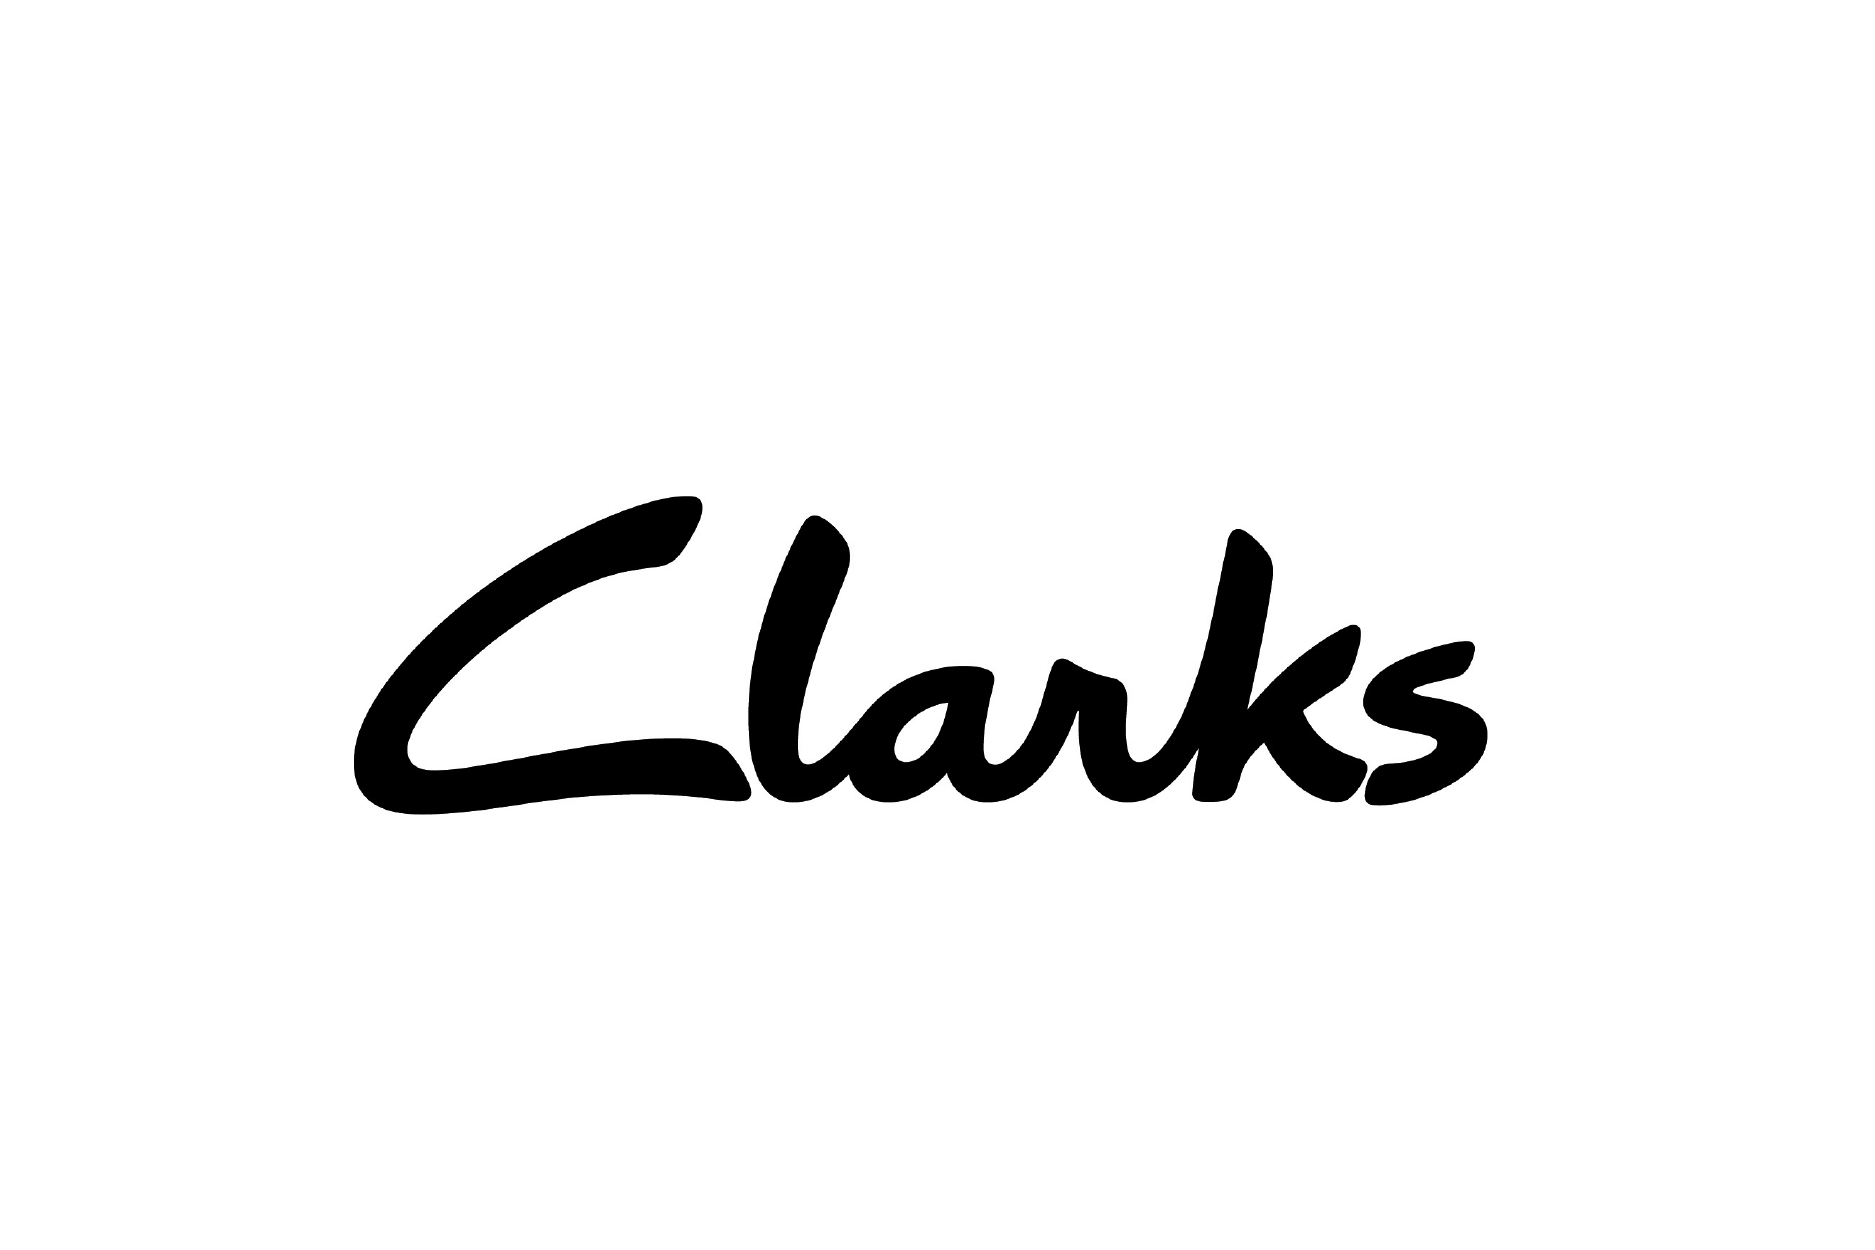 clarks logo image